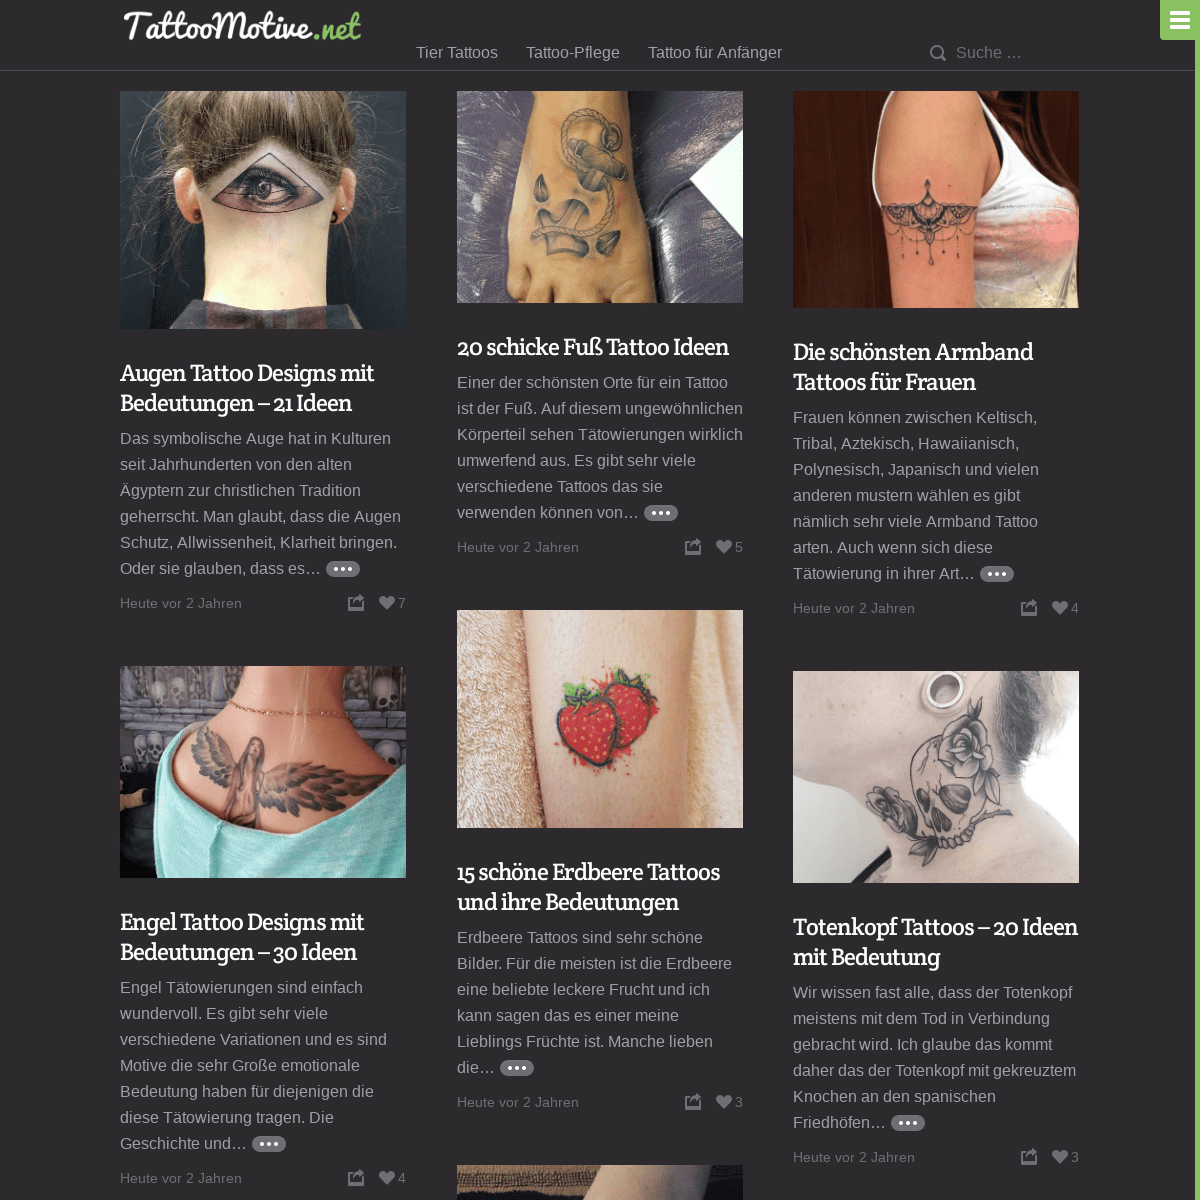 TattooMotive.net - Tattoo Motive und ihre Bedeutungen